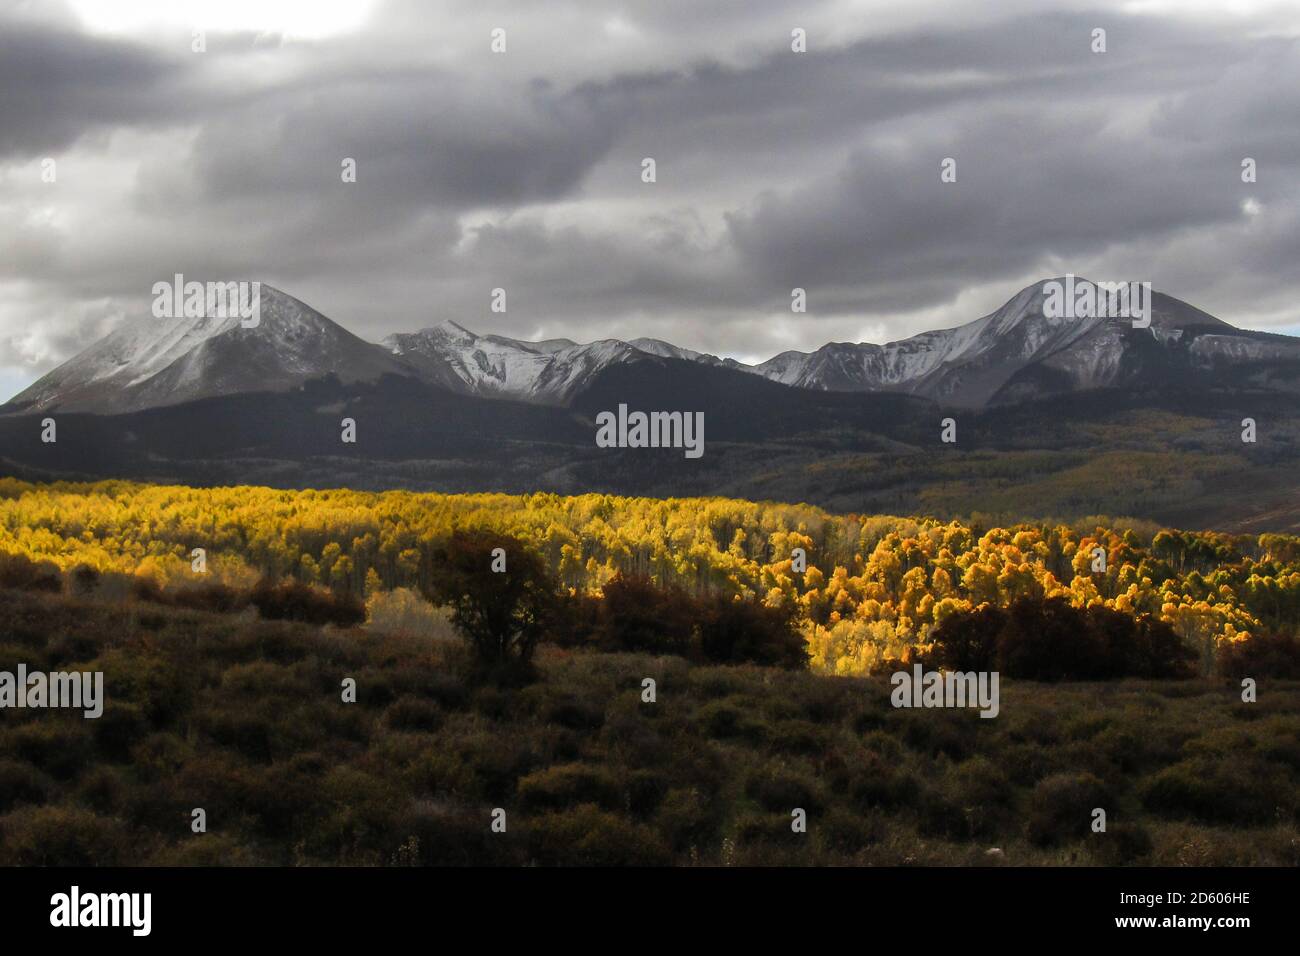 Sturmwolken sammeln sich um die schneebedeckten Gipfel der La Sal Mountains in Utah, USA, mit Aspen in goldenen Herbstfarben, die vom letzten Sonnenlicht i erleuchtet werden Stockfoto